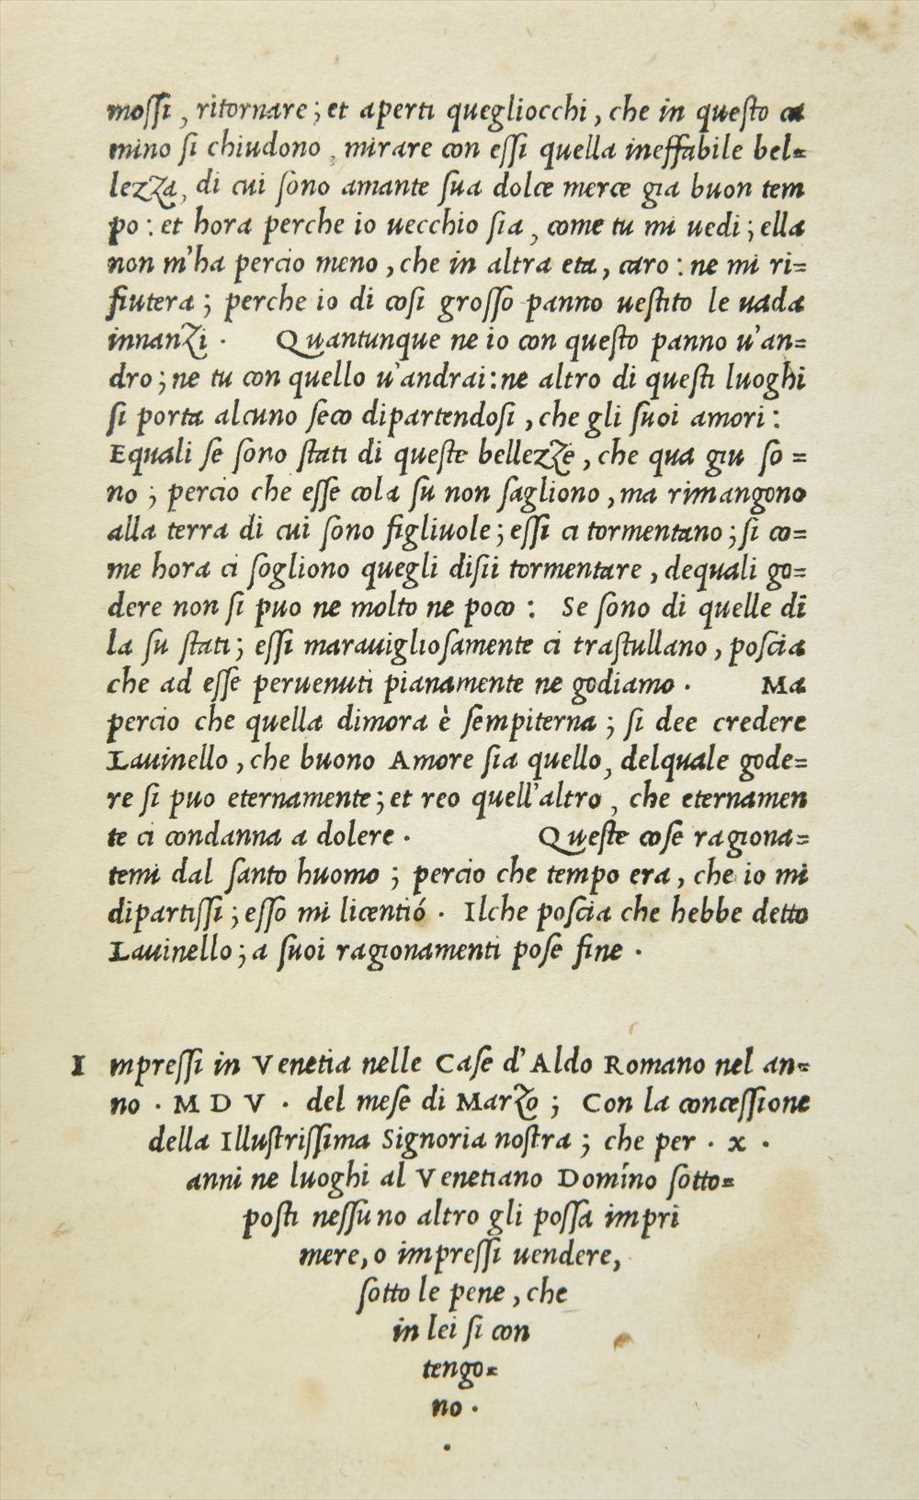 Lot 251 - Bembo (Pietro). Gli Asolani, 1st edition, 1st issue, Venice: nelle Case d'Aldo Romano, 1505